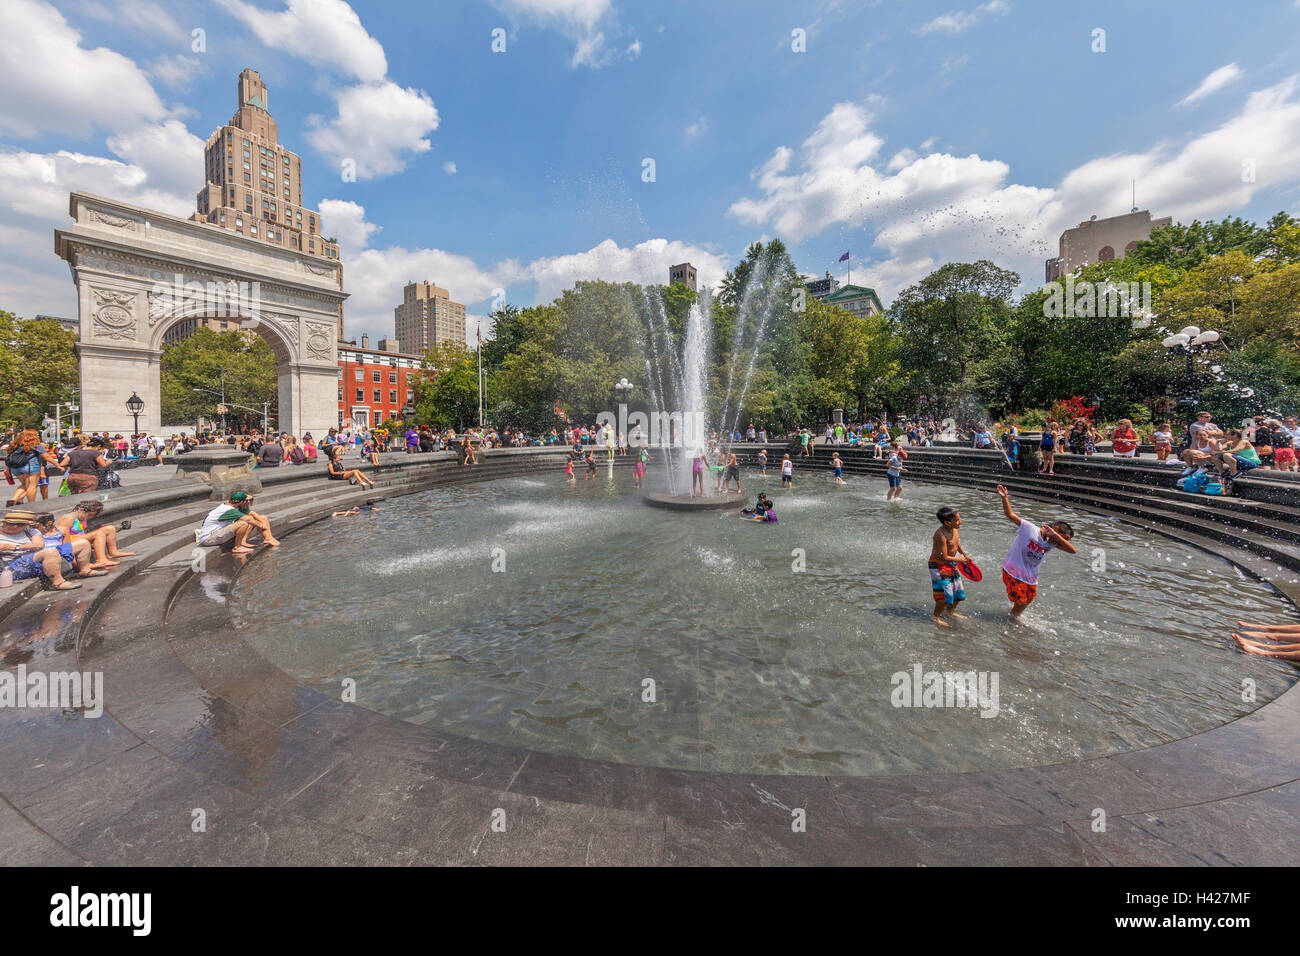 Washington Square Park Arco nella città di New York e persone che giocano nella fontana di acqua. Foto Stock